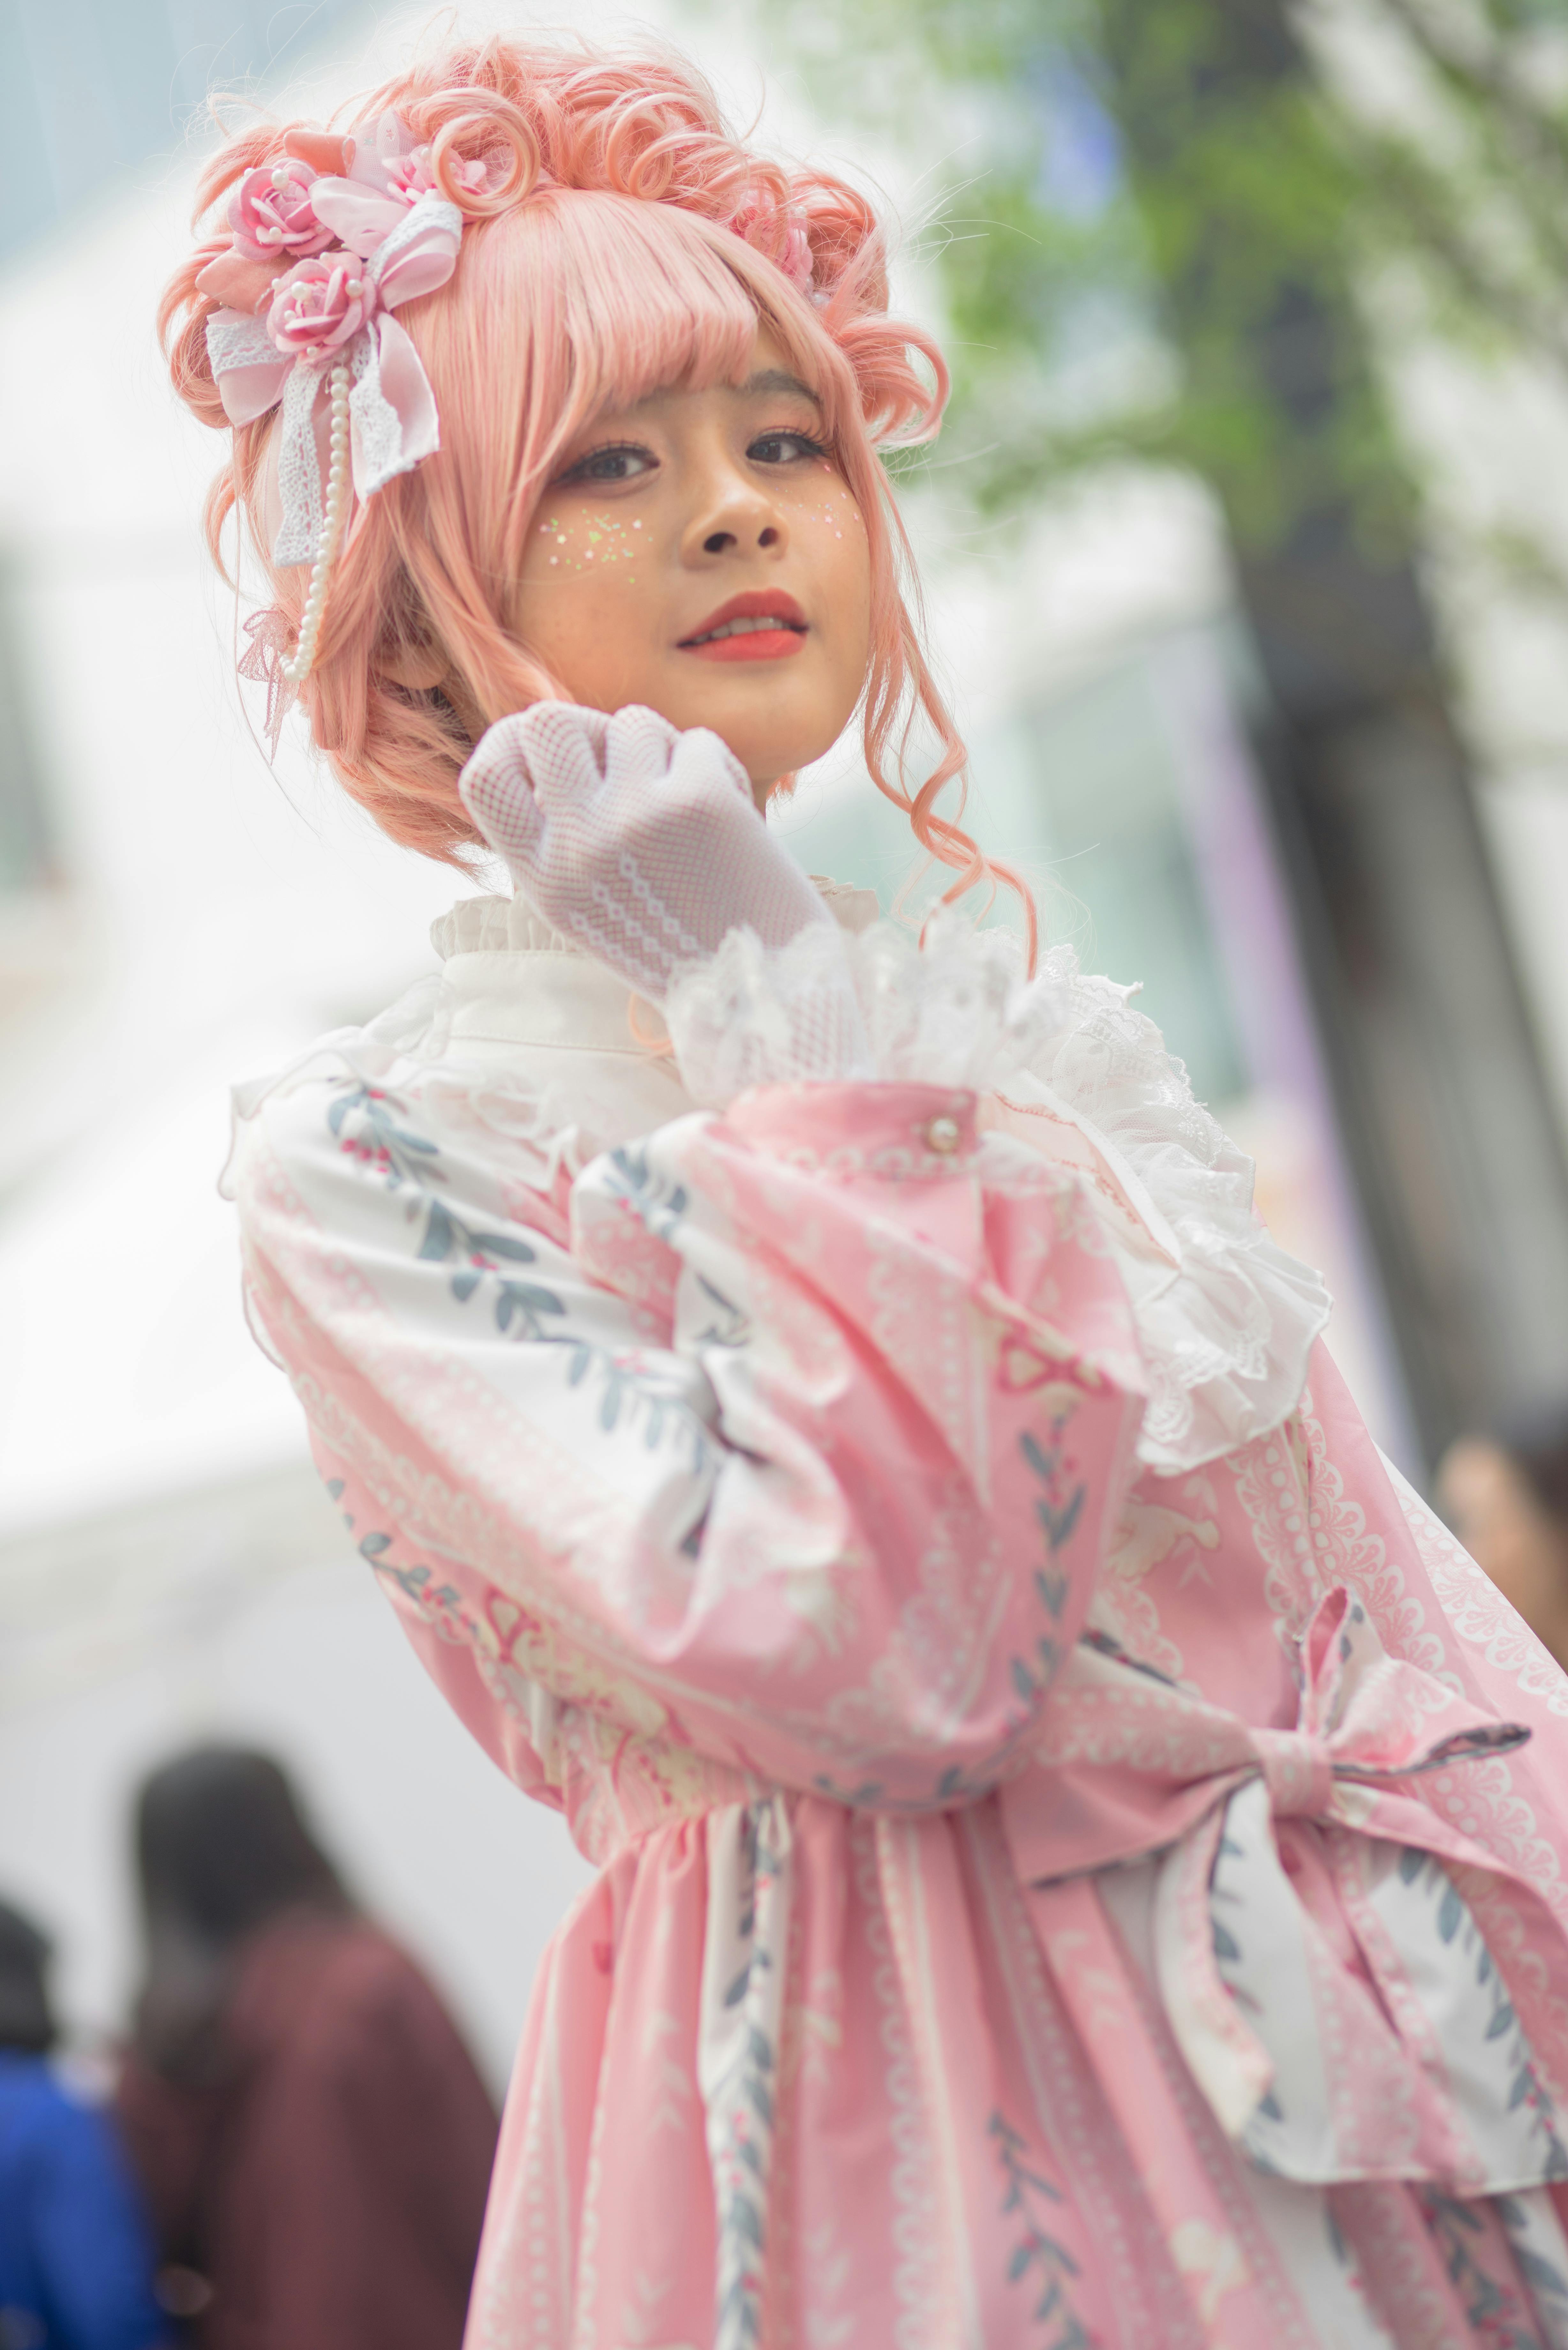 Eine Frau in Lolita-Kleidung | Quelle: Pexels